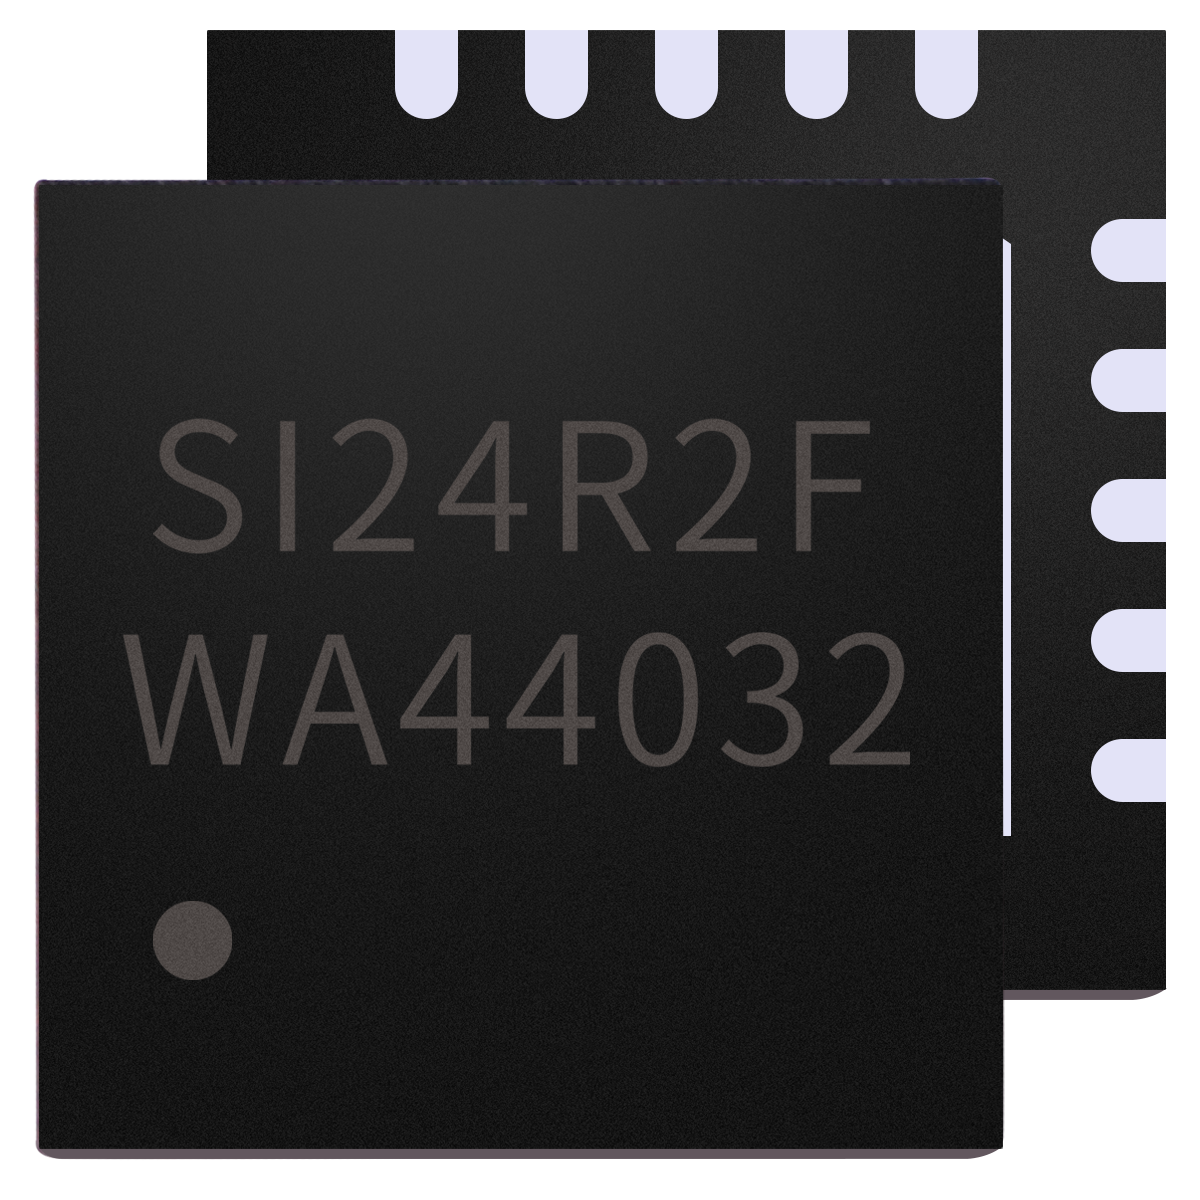 有源RFID标签系统SoC单芯片Si24R2F图片